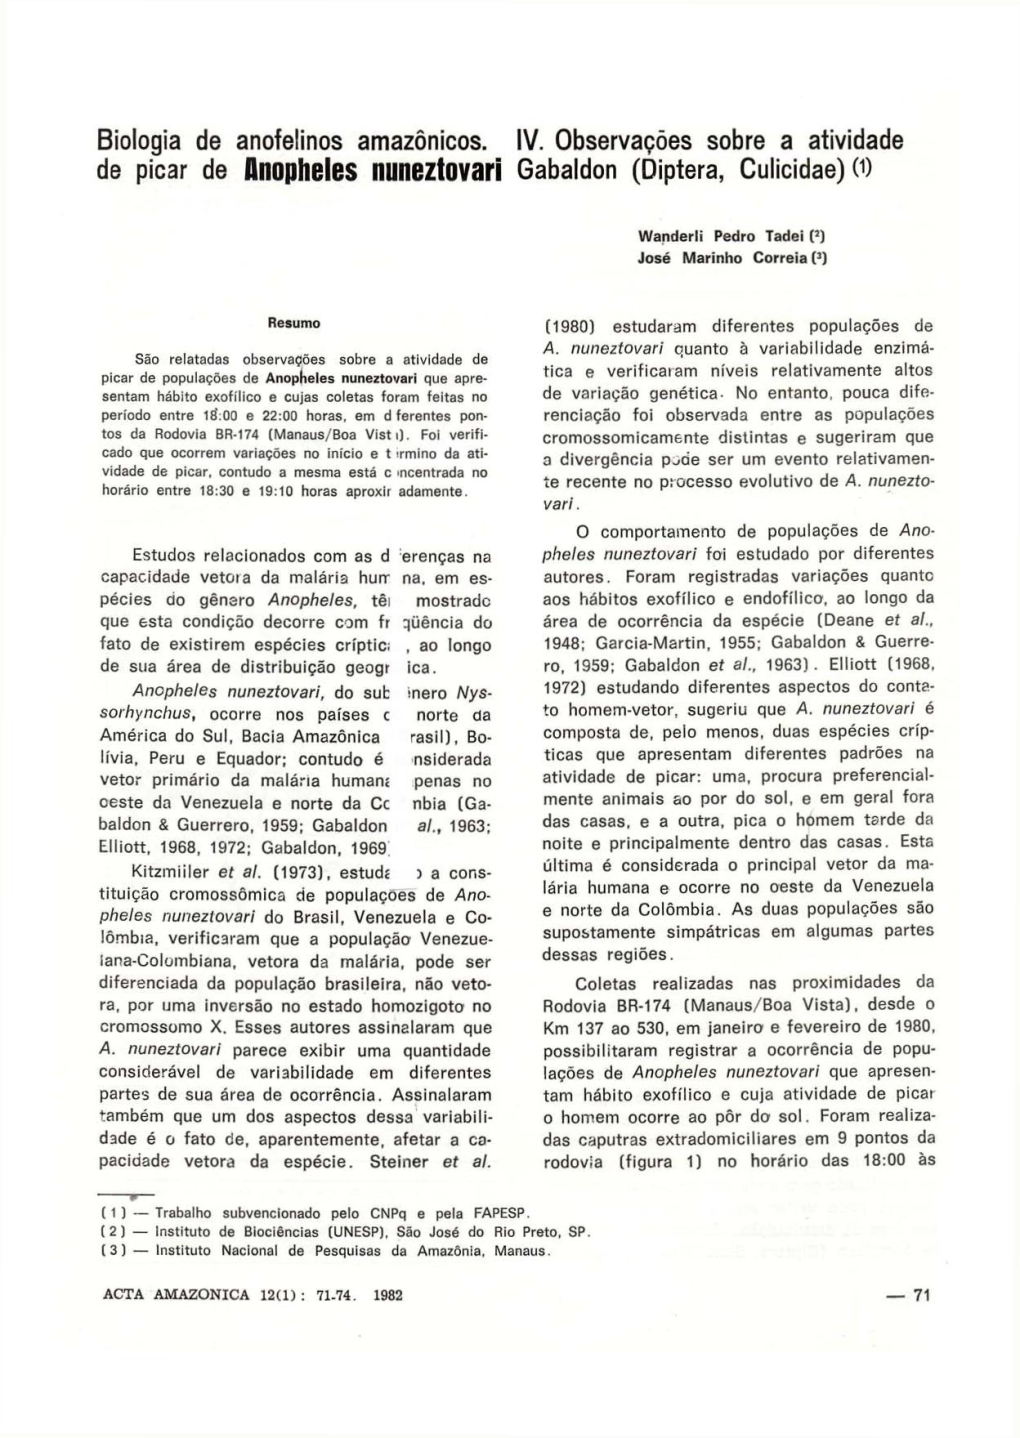 Biologia De Anofelinos Amazônicos. IV. Observações Sobre a Atividade De Picar De Anopheles Nuneztovari Gabaldon (Diptera, Culicidae) 0)